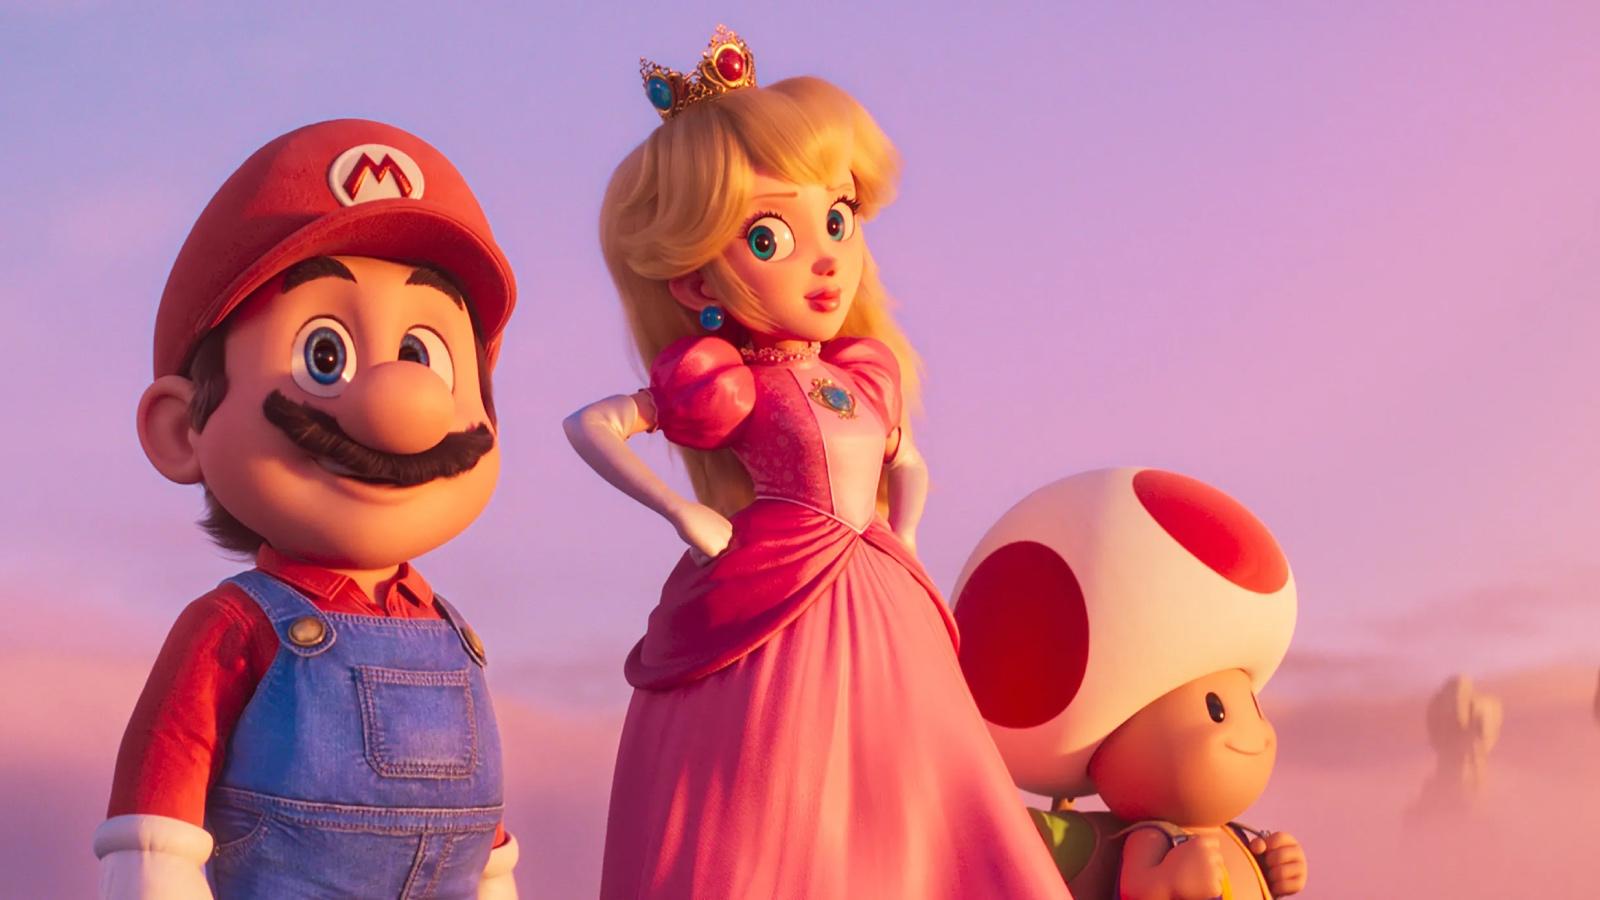 Mario, Princess Peach, and Toad in Super Mario Bros Movie